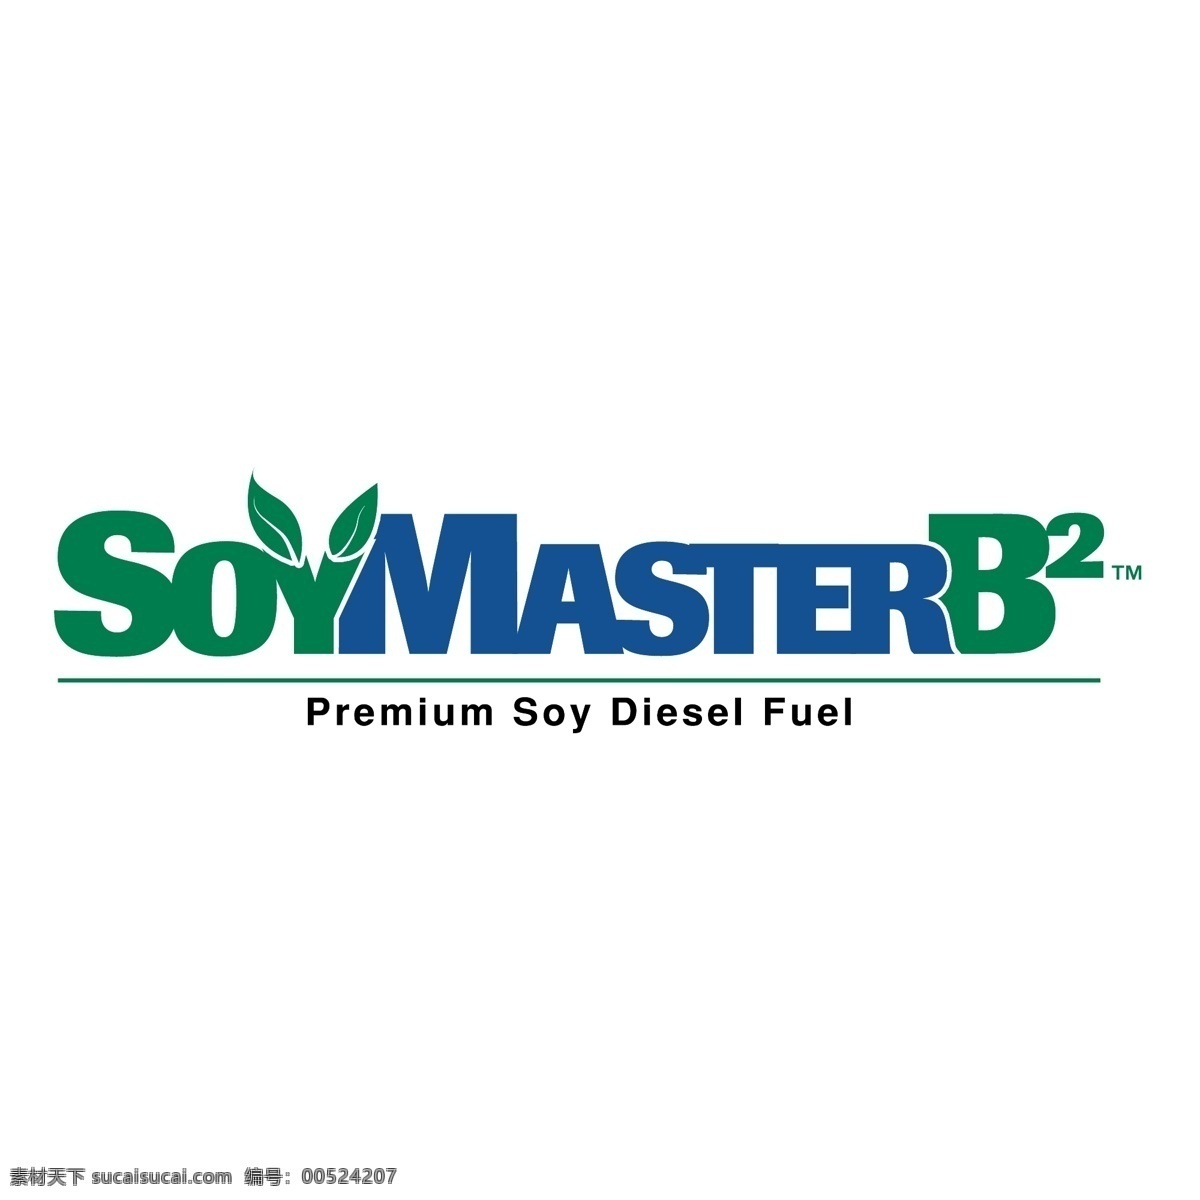 b2 soymaster 标识 公司 免费 品牌 品牌标识 商标 矢量标志下载 免费矢量标识 矢量 psd源文件 logo设计